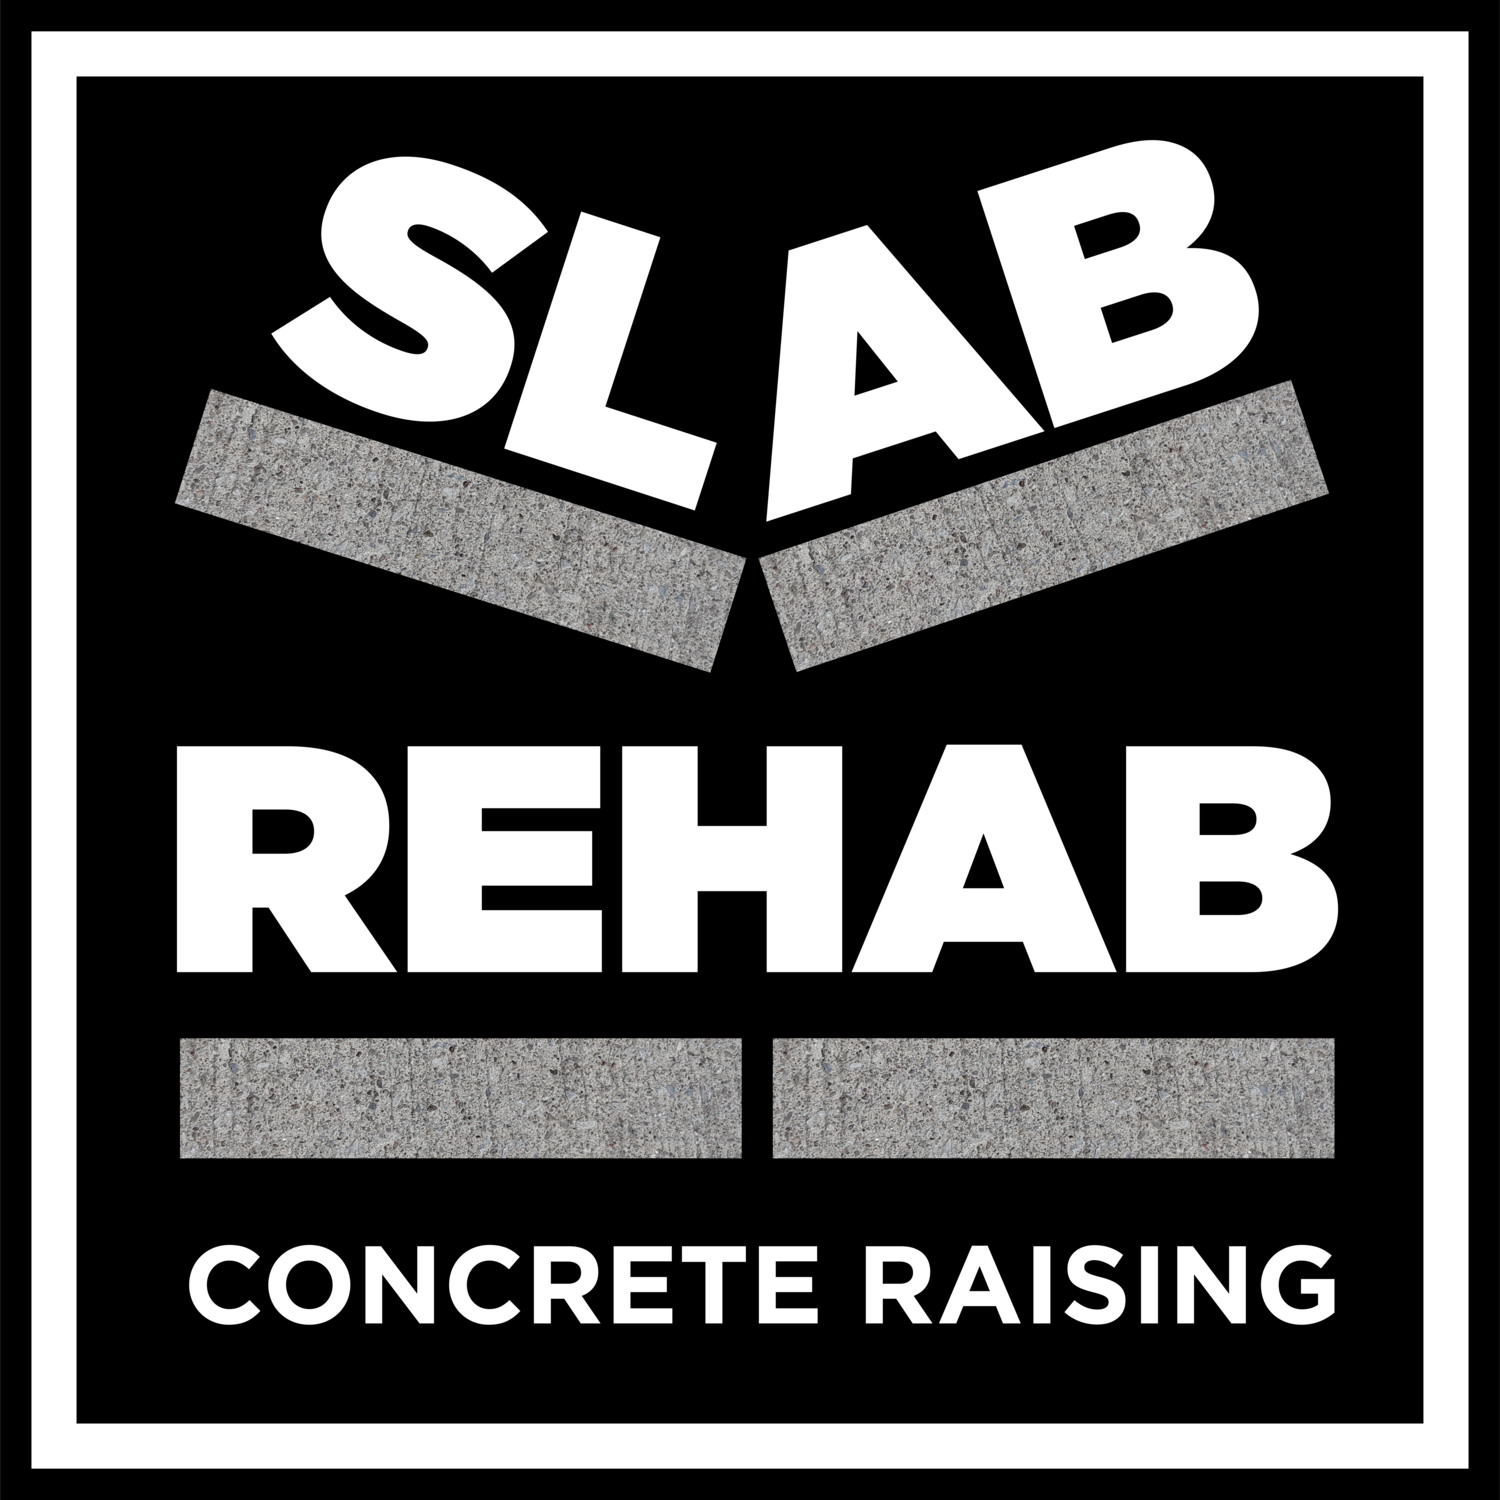 Slab Rehab Concrete Raising